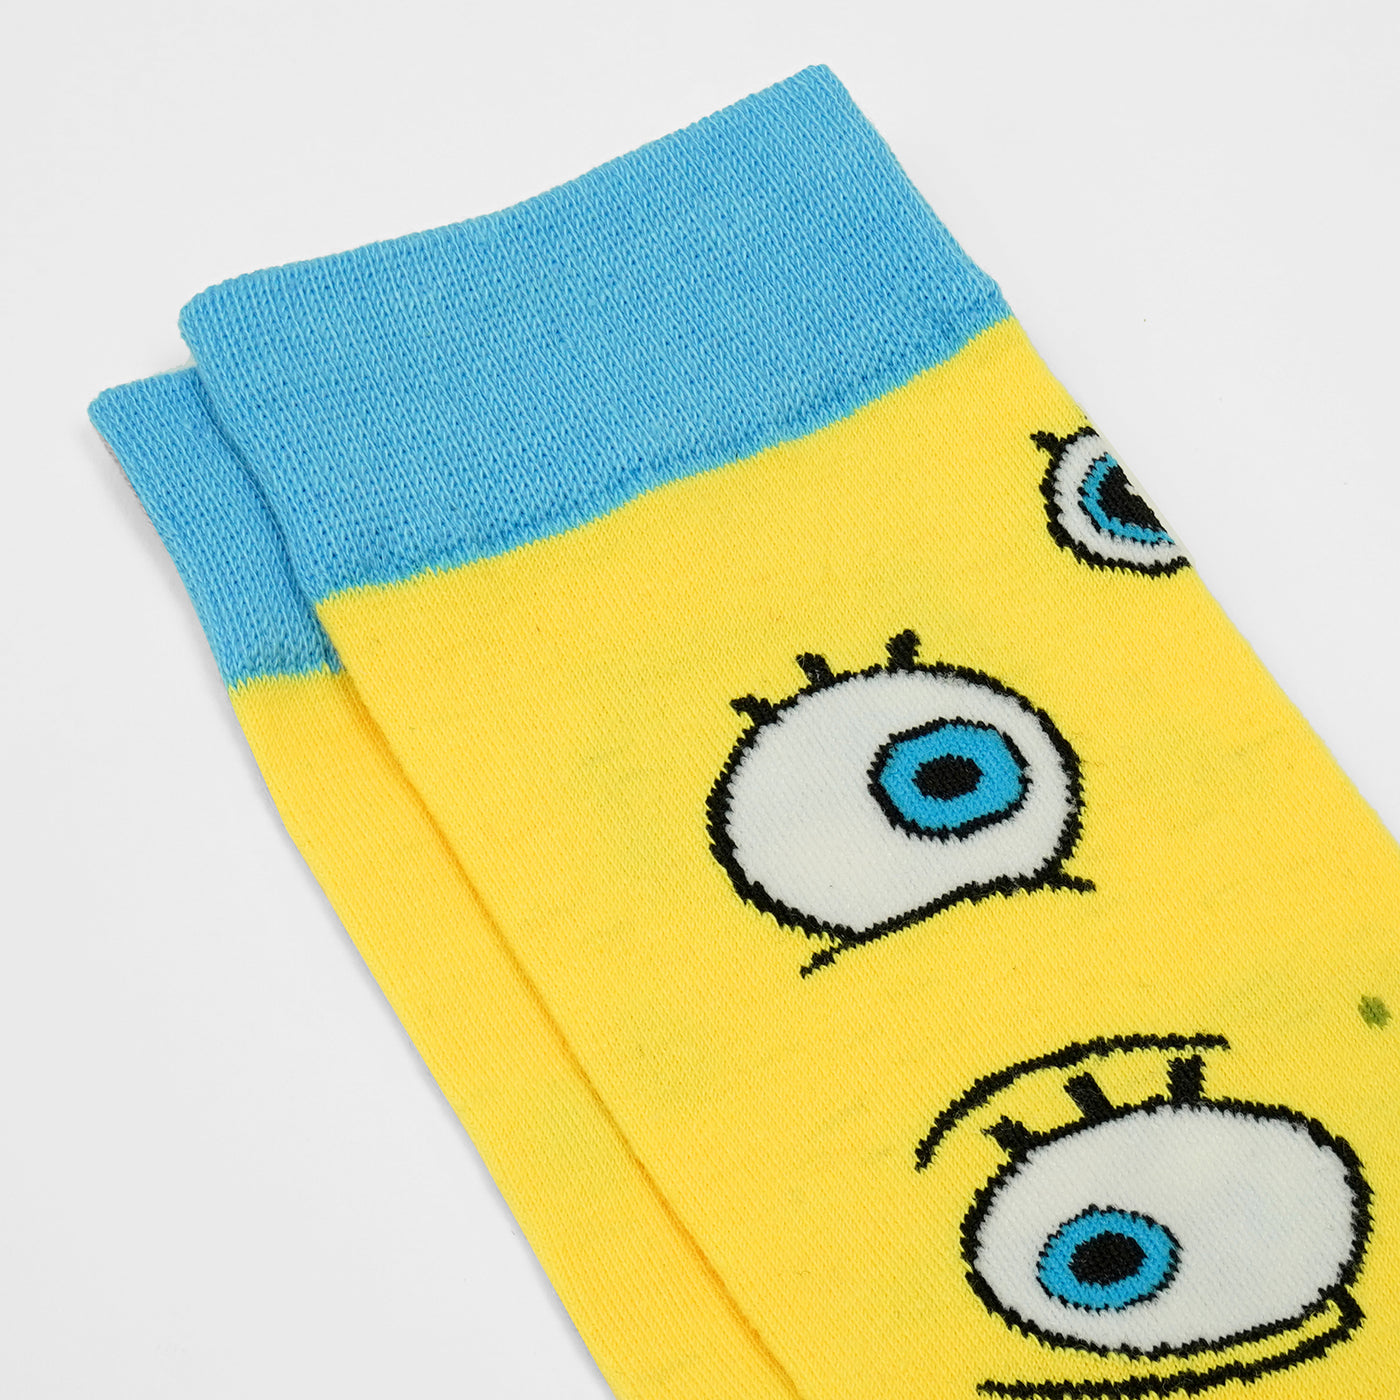 Spongebob Squarepants Crew Socks - 2 Pack